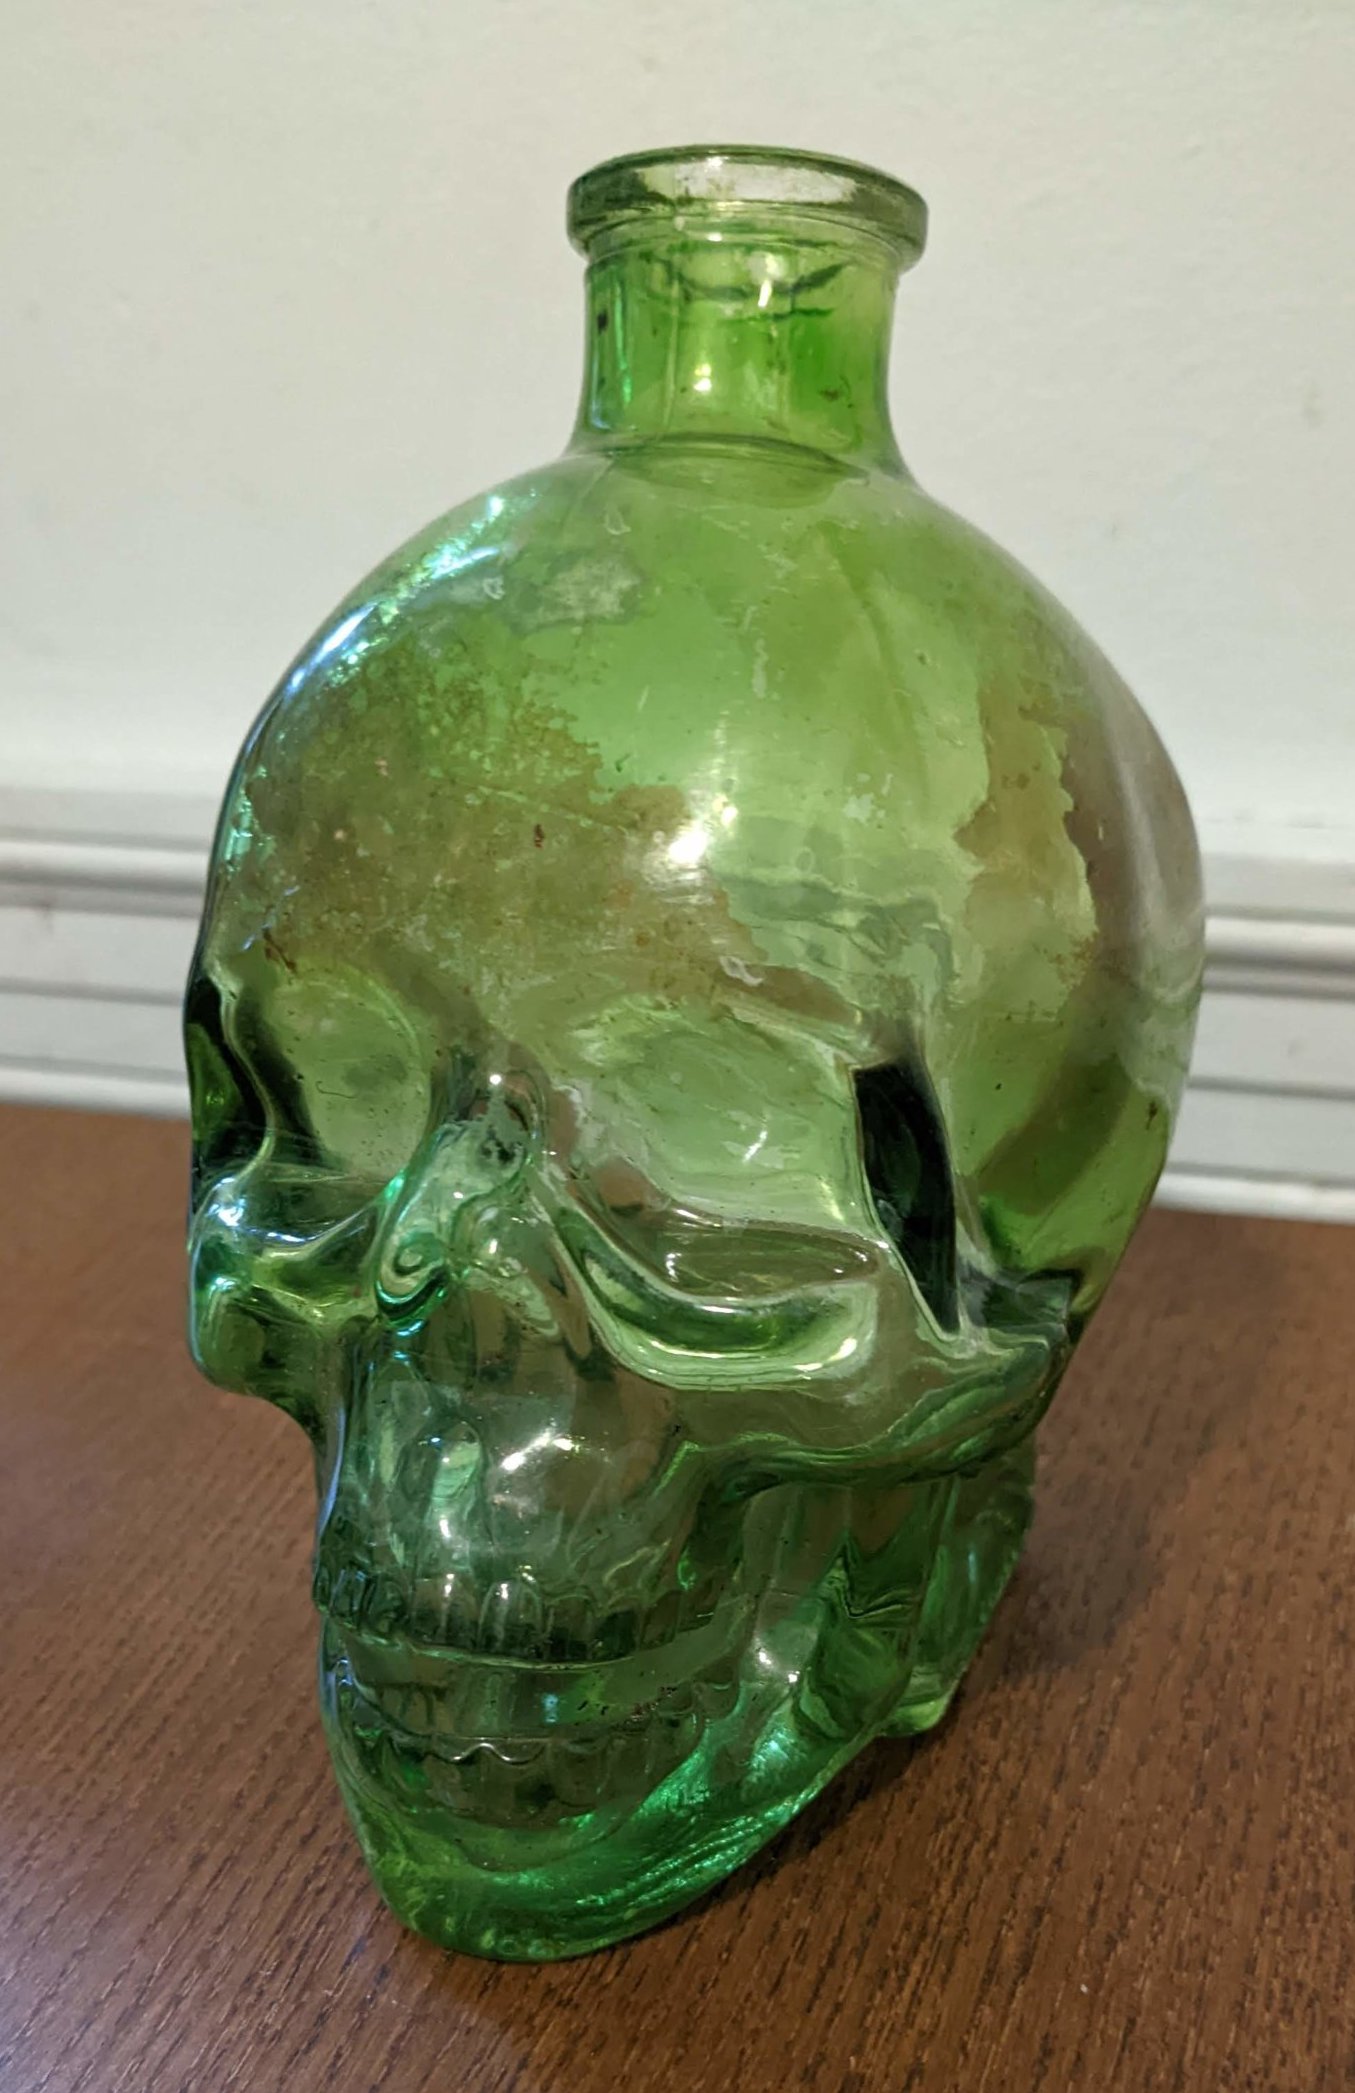 A green glass bottle in the shape of a skull - very seasonal!